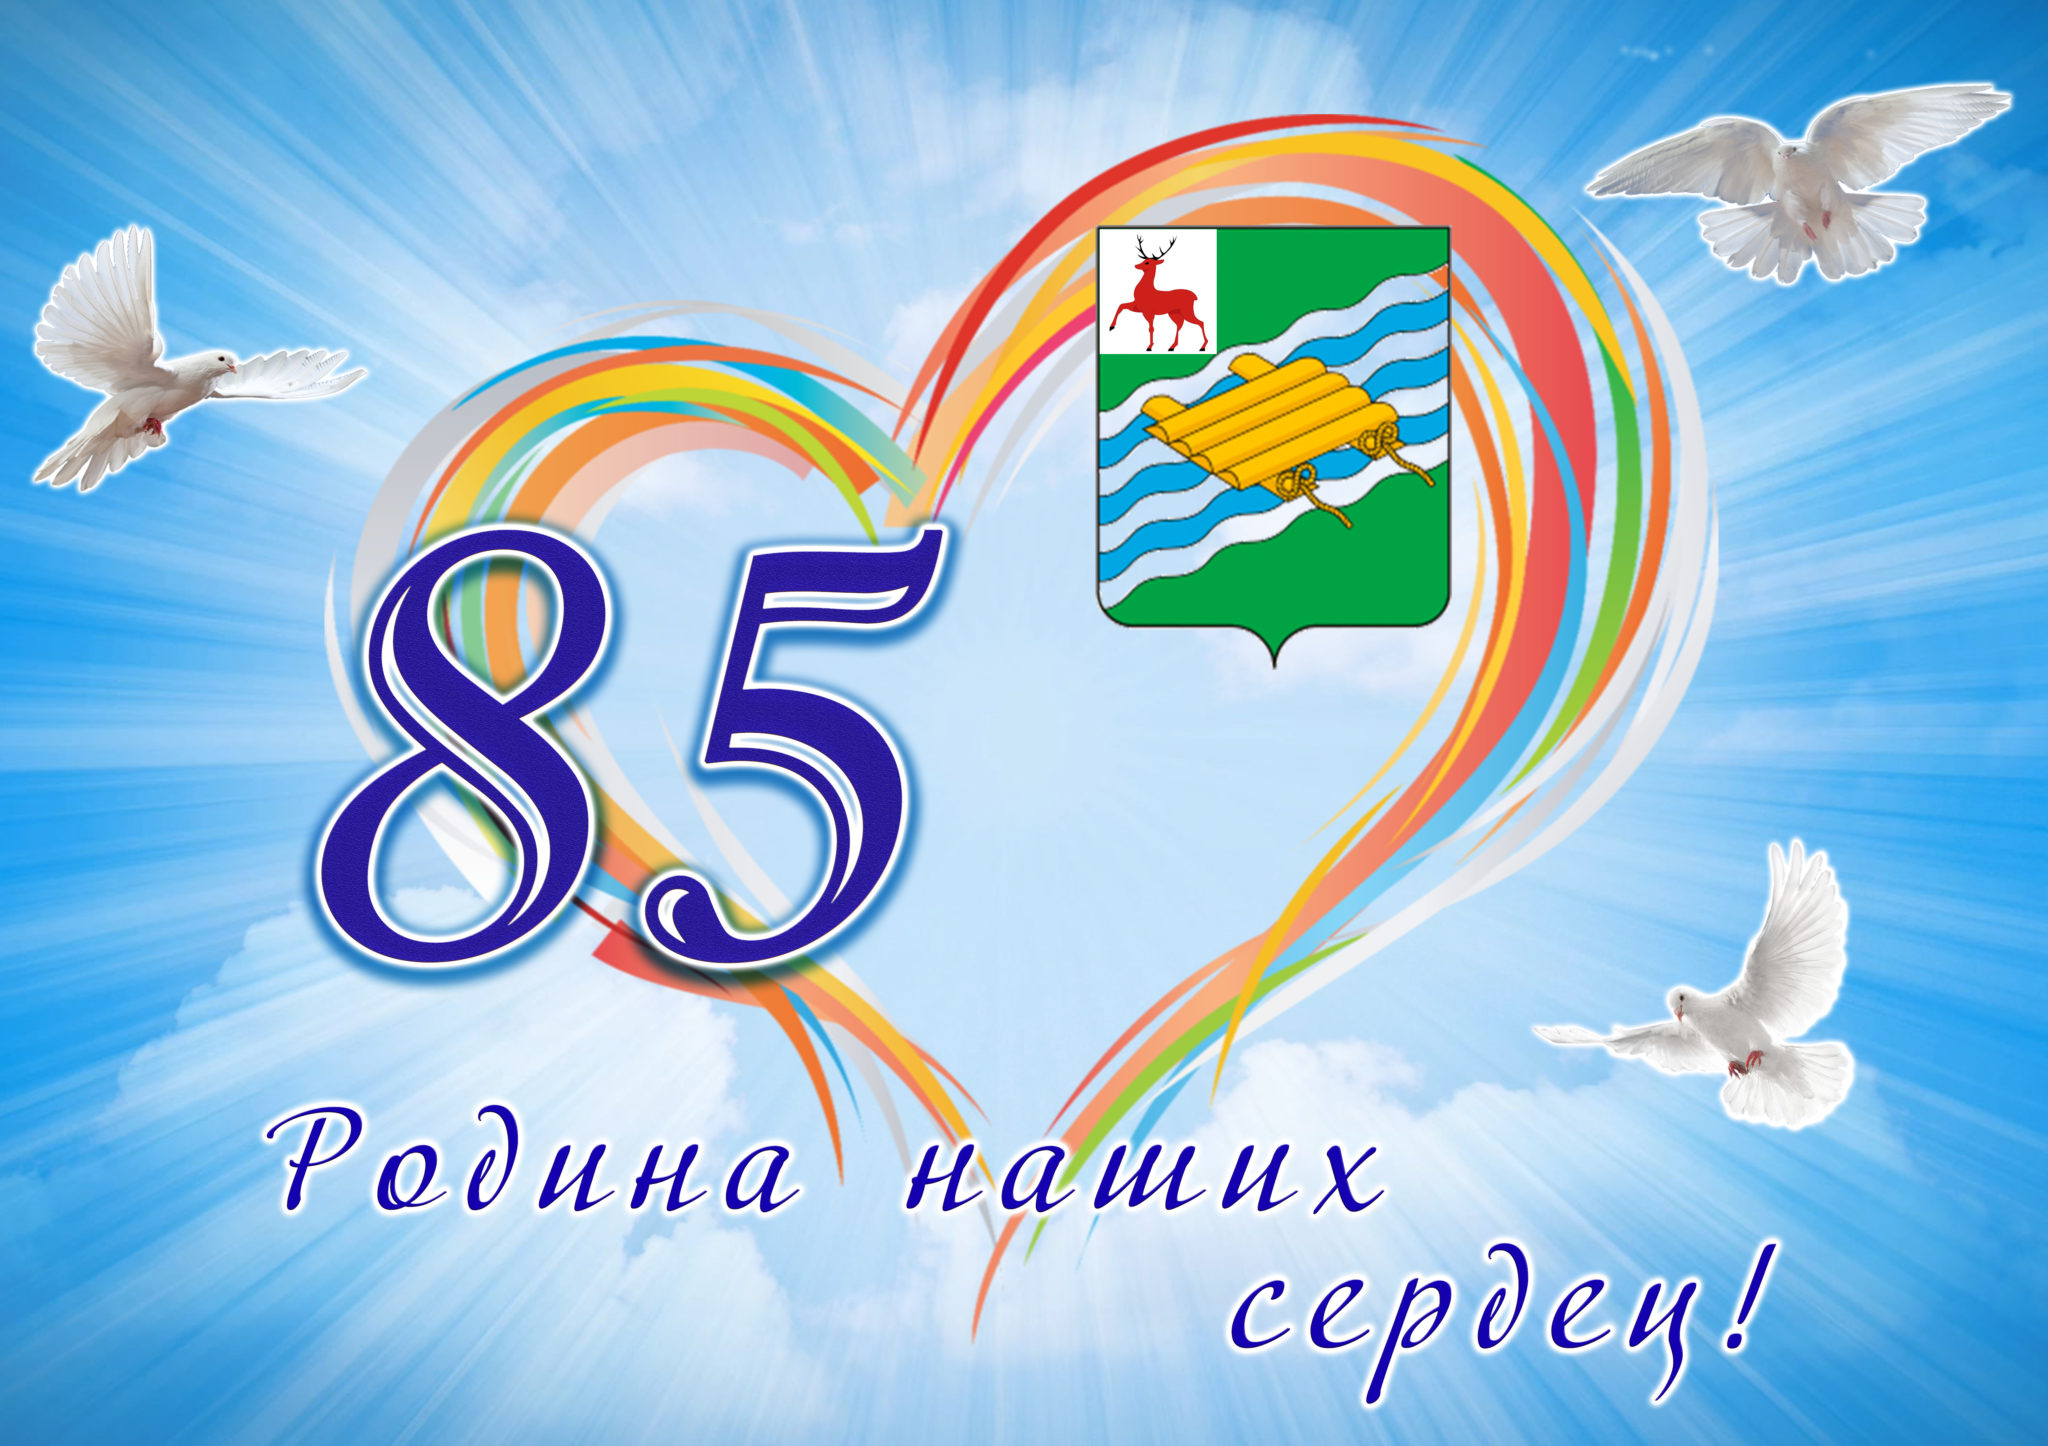 Эмблема к 85 летию Алтайского края